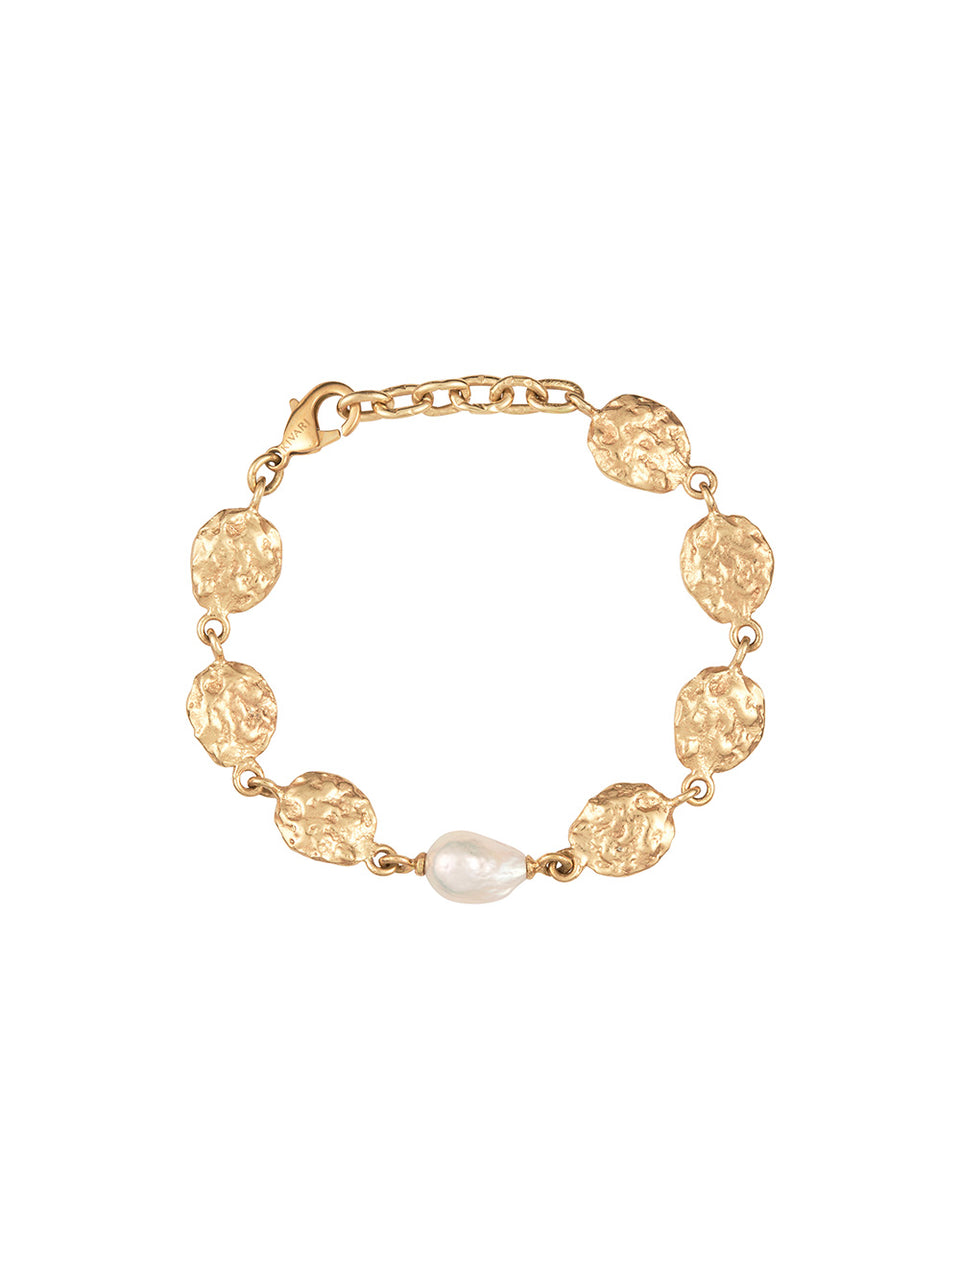 Calypso Pearl Bracelet KIVARI | Gold and pearl bracelet